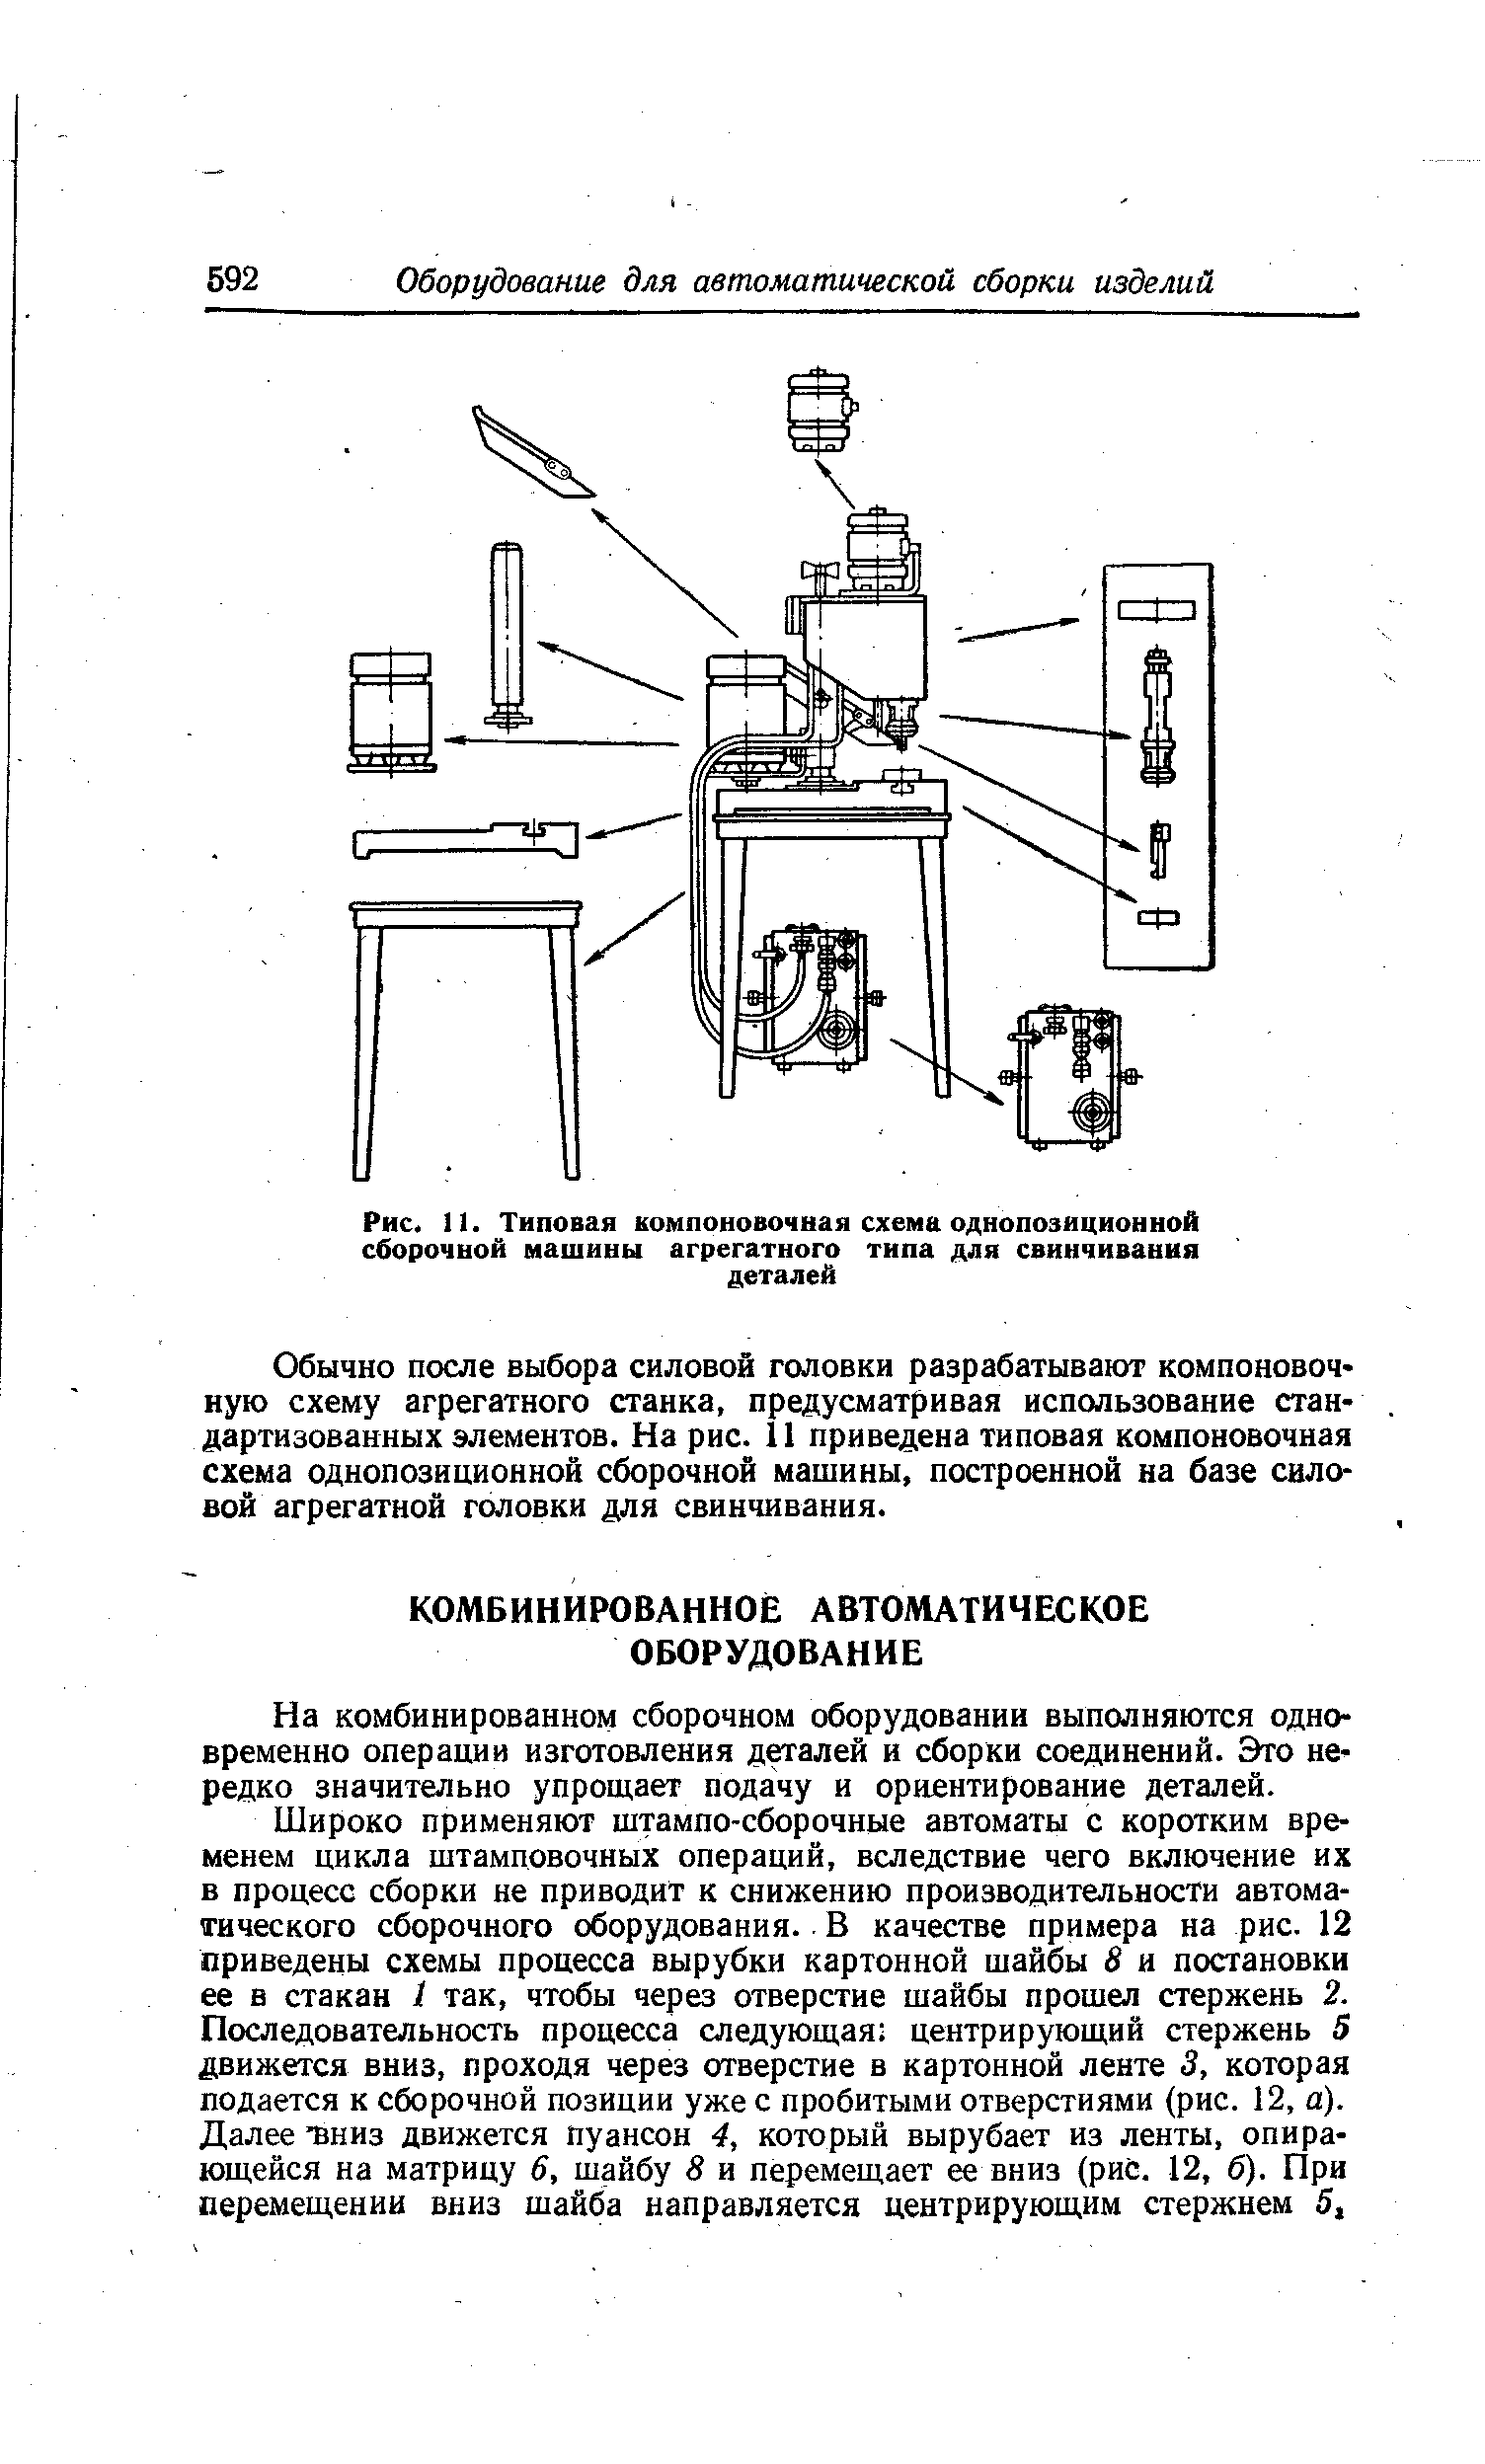 Рис. 1). Типовая компоновочная схема однопозиционной сборочной машины агрегатного типа для свинчивания деталей
